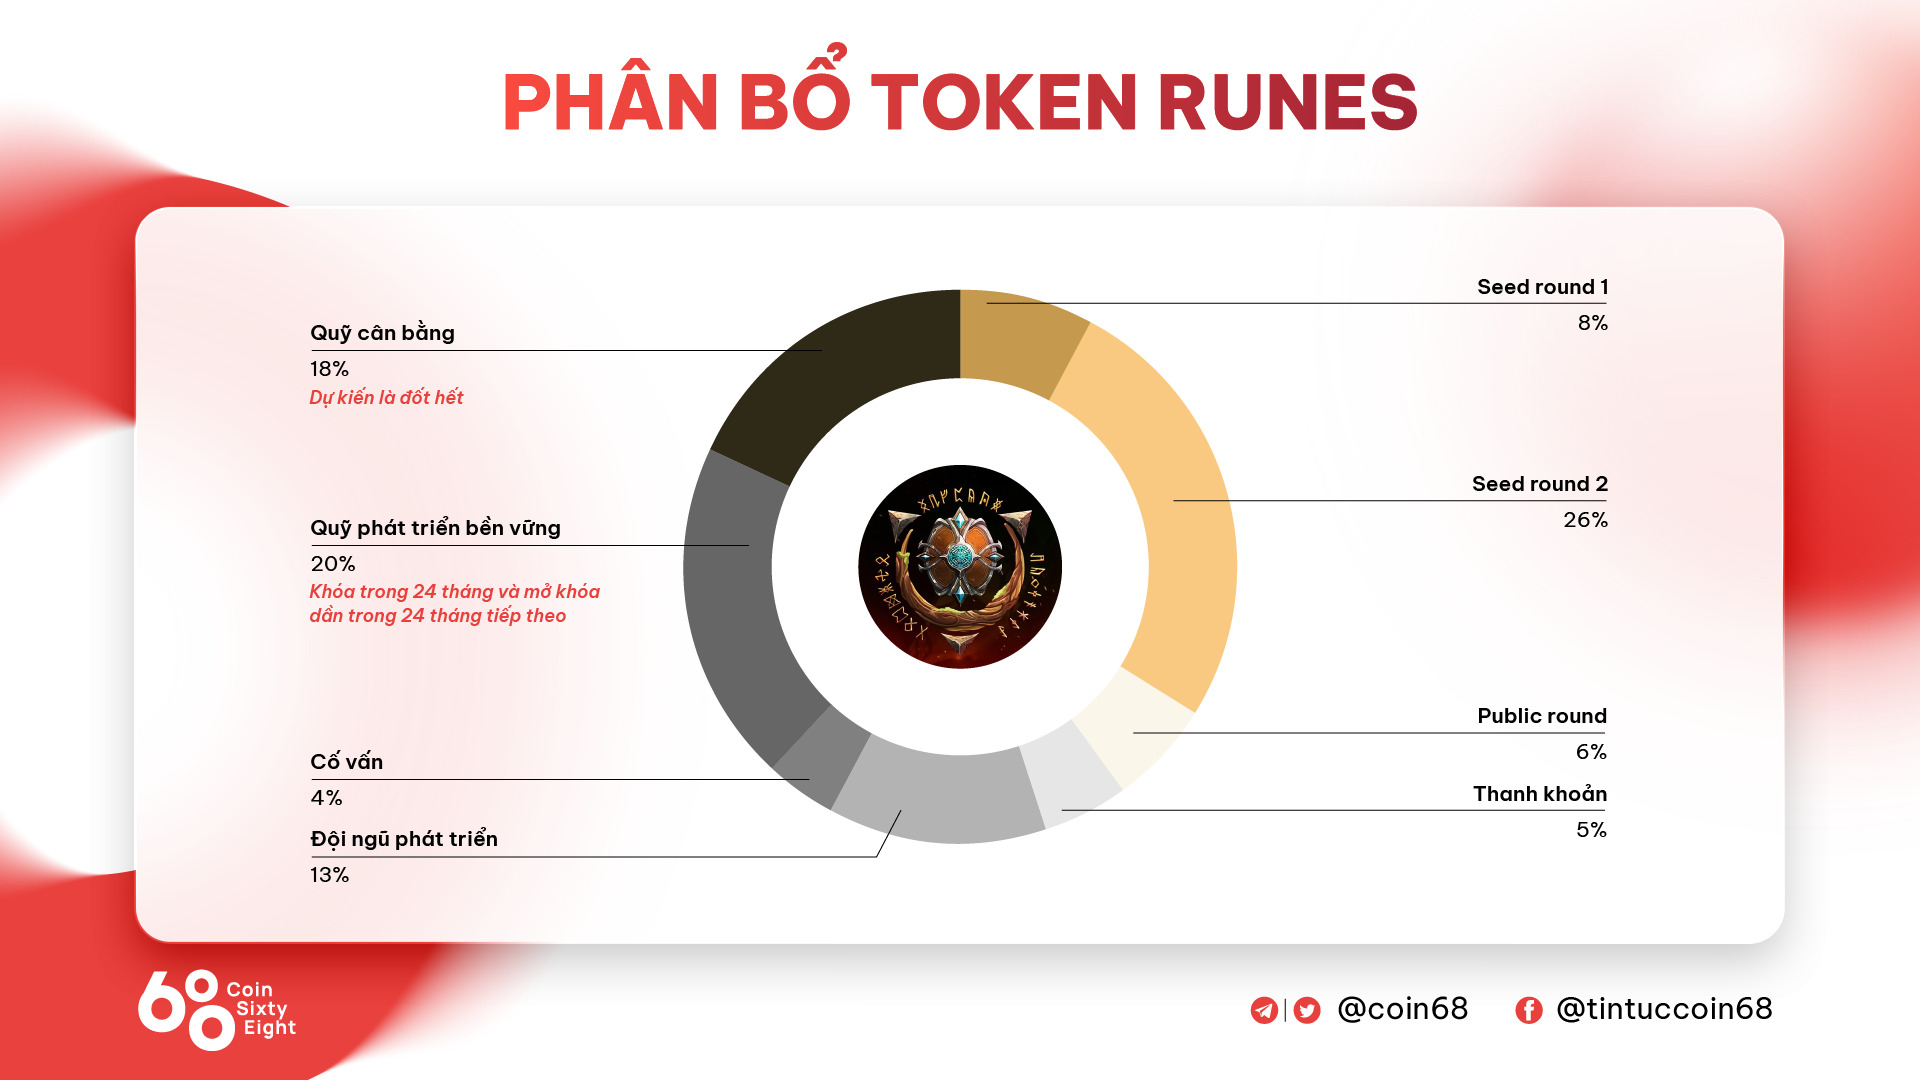 Rune Seeker runes Là Gì Mô Hình Mới Của Blockchain Gaming Liệu Có Thật Sự Hiệu Quả